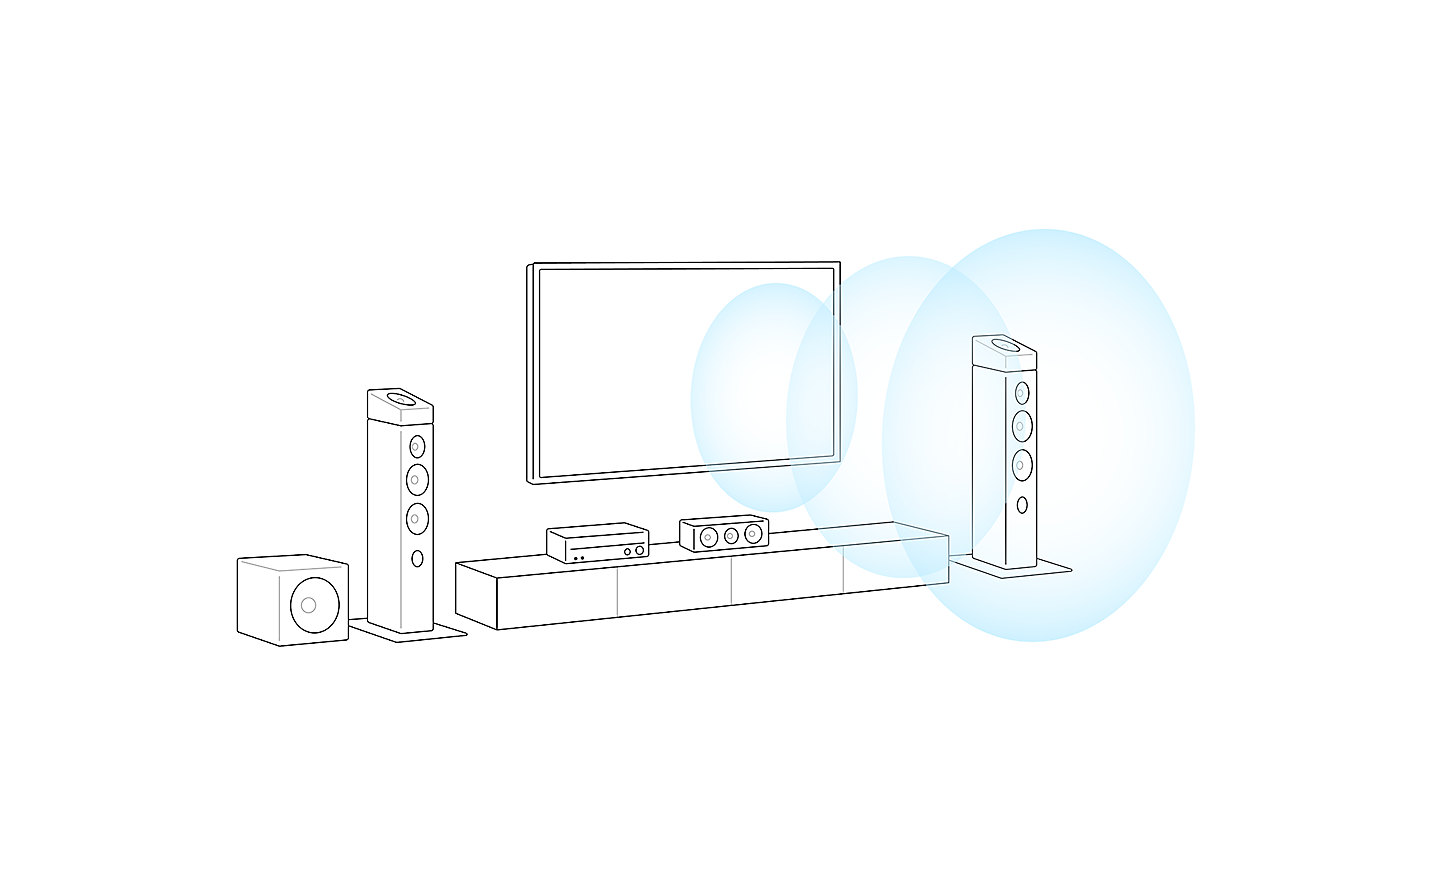 Televizoriaus sistemos kontūrinis vaizdas. Iš televizoriaus centro sklinda 3 mėlyni ratai, rodantys garso kryptį